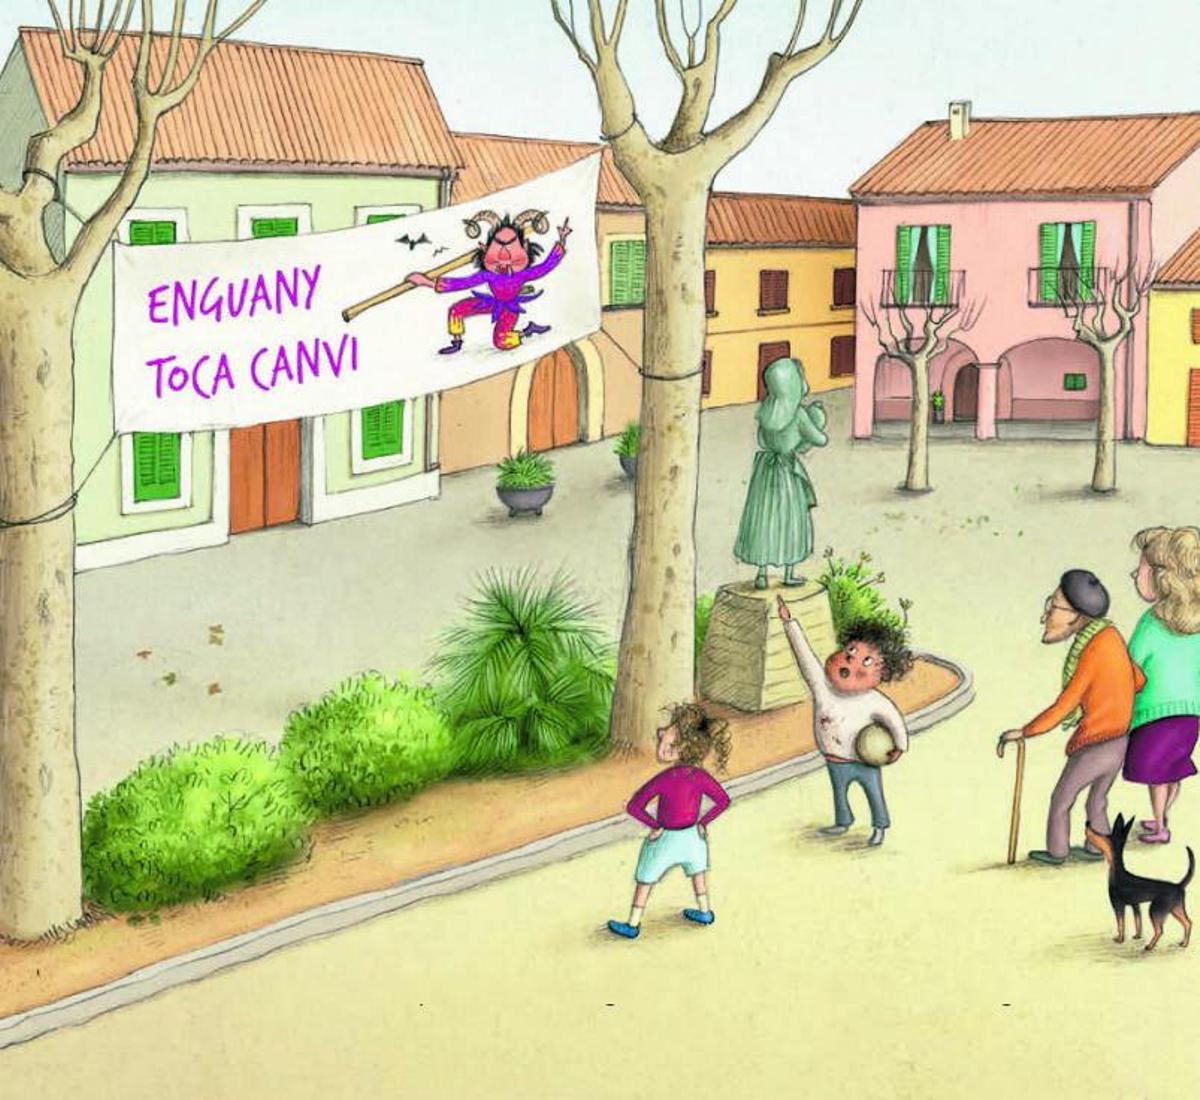 Un cuento infantil para reivindicar la igualdad de género en Sant Antoni